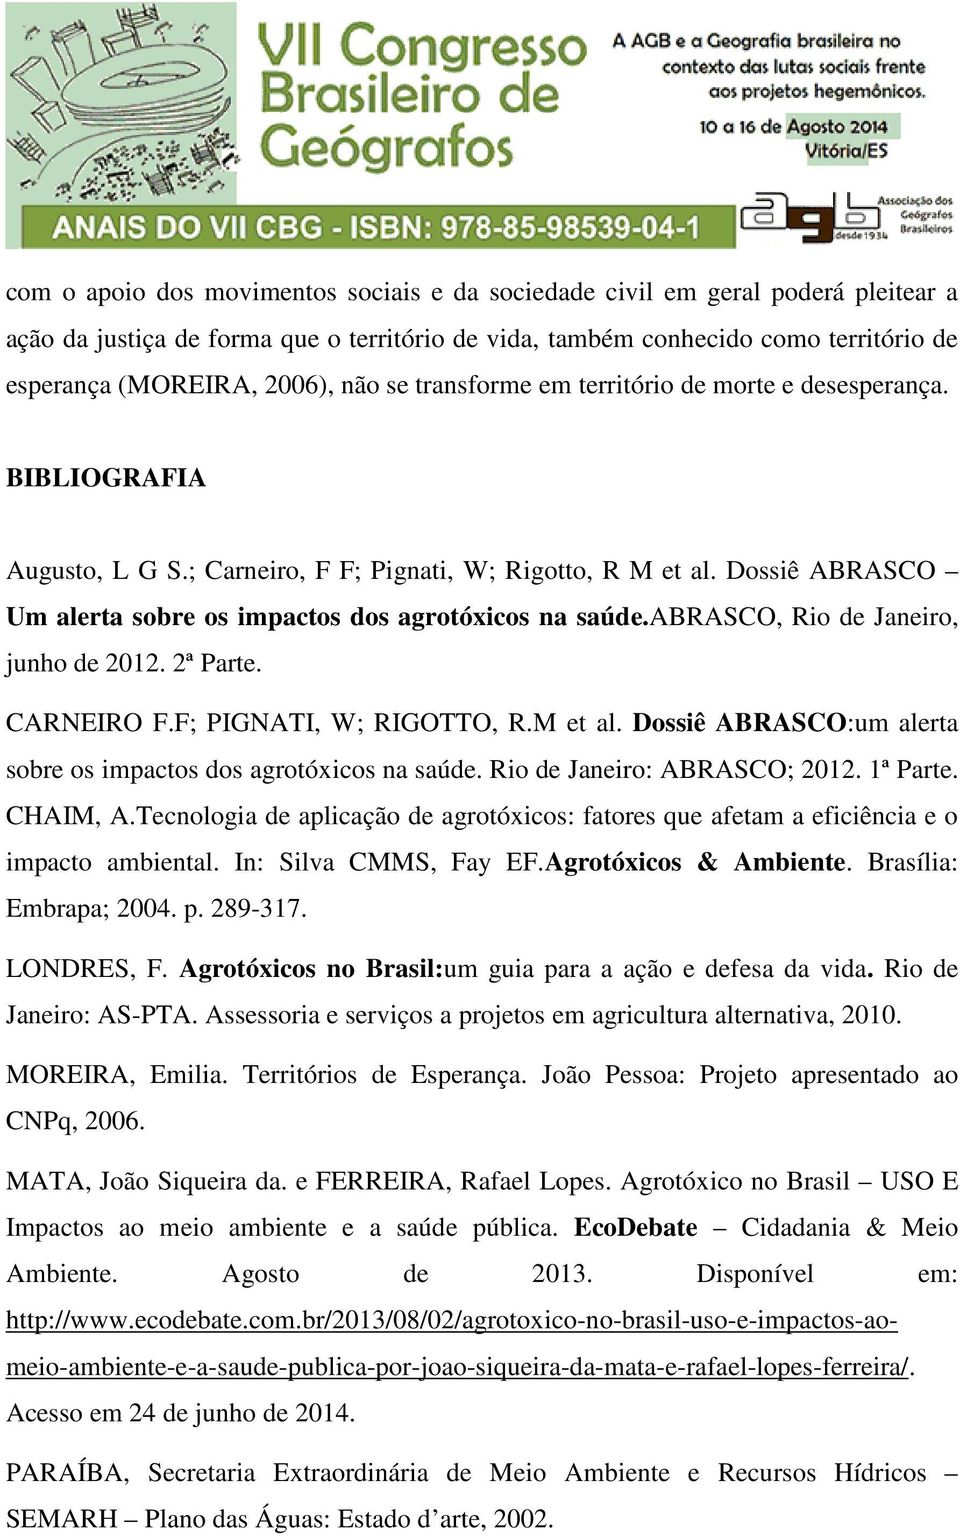 Dossiê ABRASCO Um alerta sobre os impactos dos agrotóxicos na saúde.abrasco, Rio de Janeiro, junho de 2012. 2ª Parte. CARNEIRO F.F; PIGNATI, W; RIGOTTO, R.M et al.